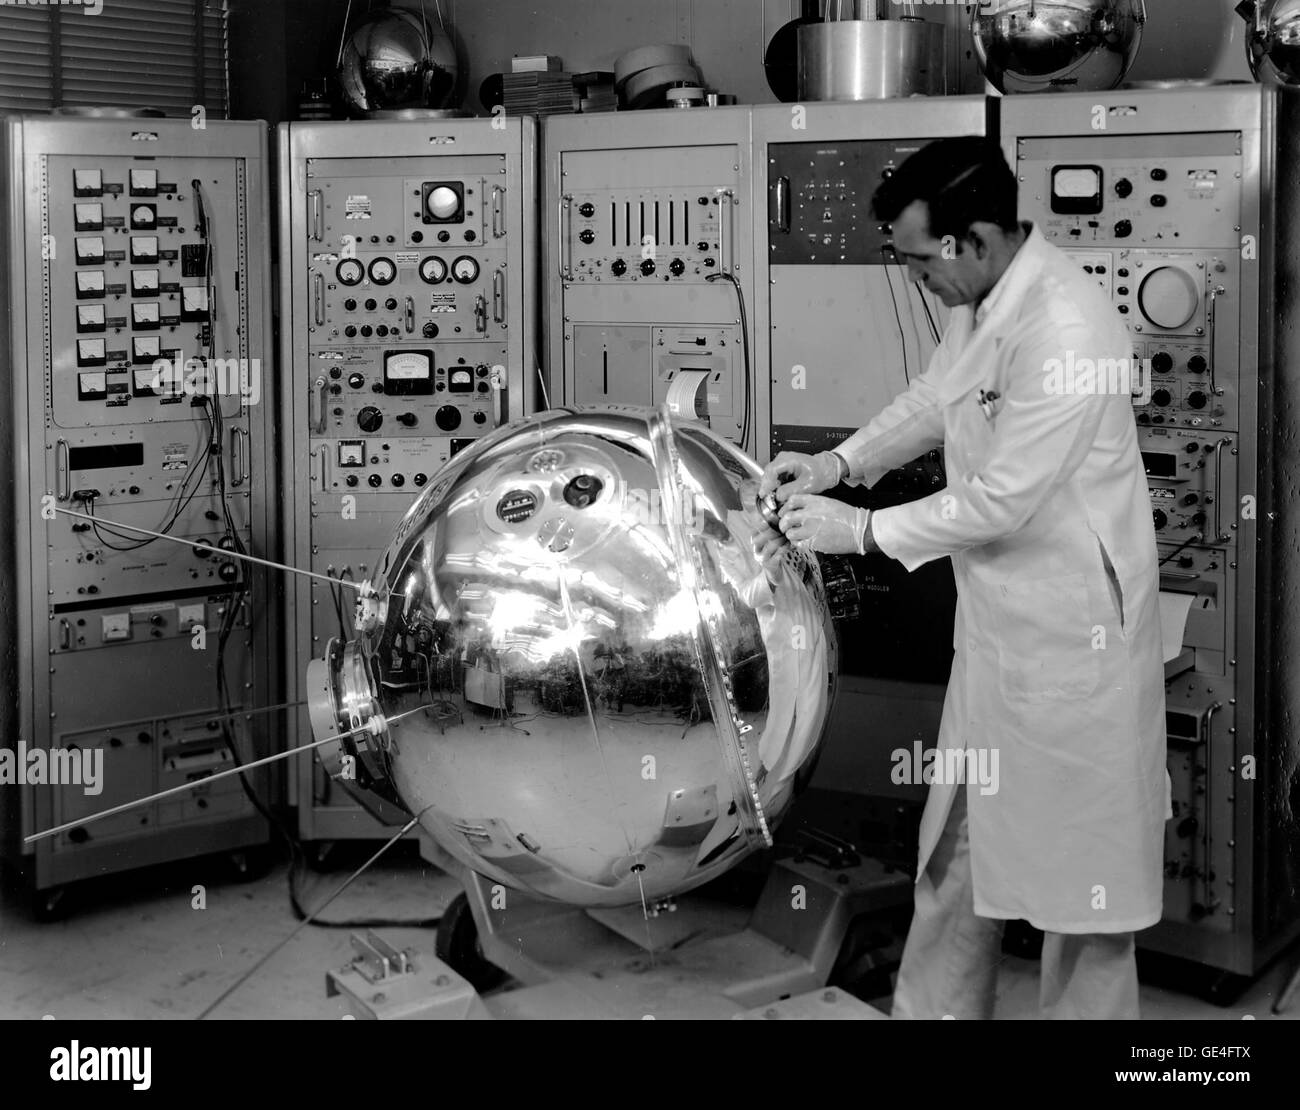 Pesant 405 livres (184 kg), ce 35 pouces (89 cm) en acier inoxydable sous pression sphere mesuré la densité, la composition, la pression et la température de l'atmosphère de la terre après son lancement de Cap Canaveral le 3 avril 1963. La mission a été l'un des trois que Goddard Space Flight Center spécialement réalisée pour en savoir plus sur les propriétés physiques du climat, les connaissances qu'ils ont finalement utilisé pour des fins scientifiques et météorologiques. Explorer XVII a effectué deux spectromètres, quatre jauges de pression sous vide et deux sondes électrostatiques. Avant qu'il atteint son orbite prévue allant de 158 Banque D'Images